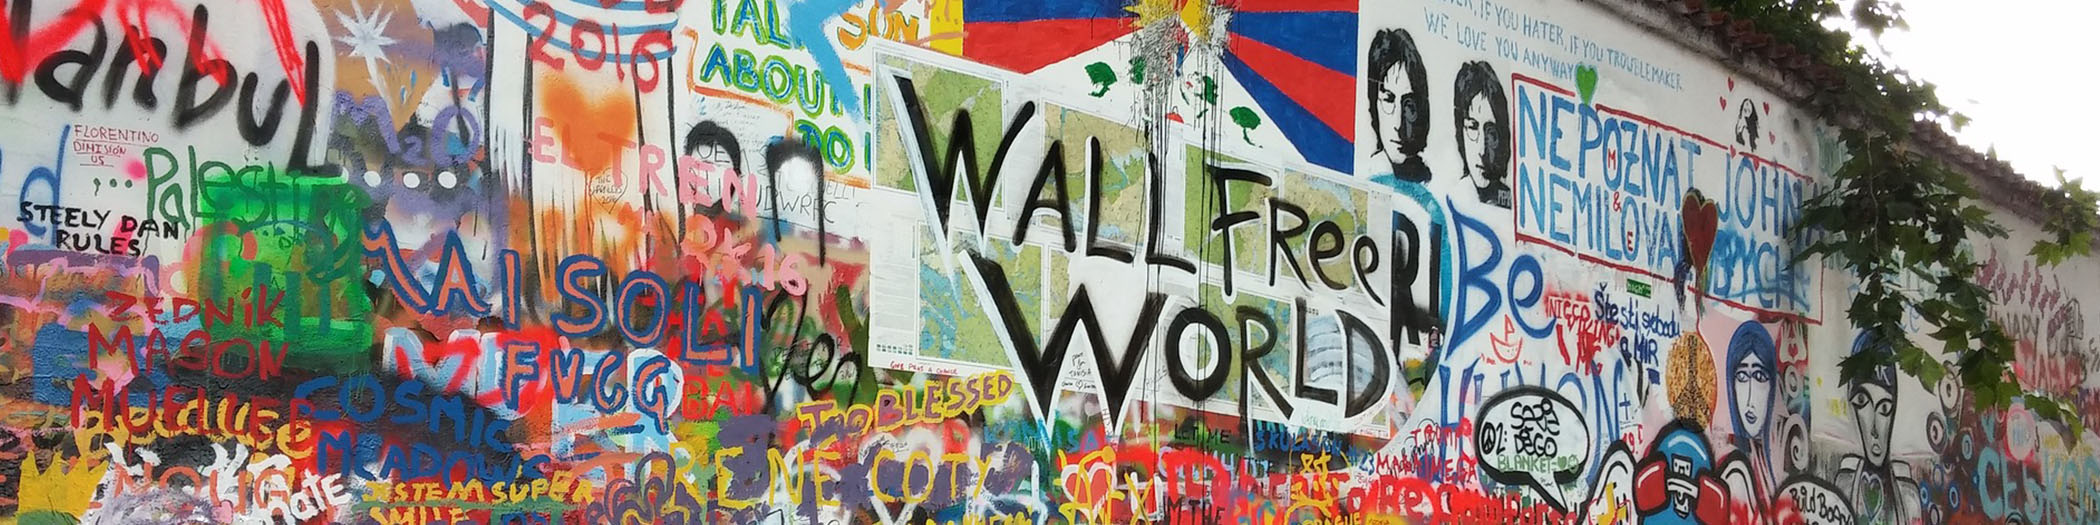 wall free world resize